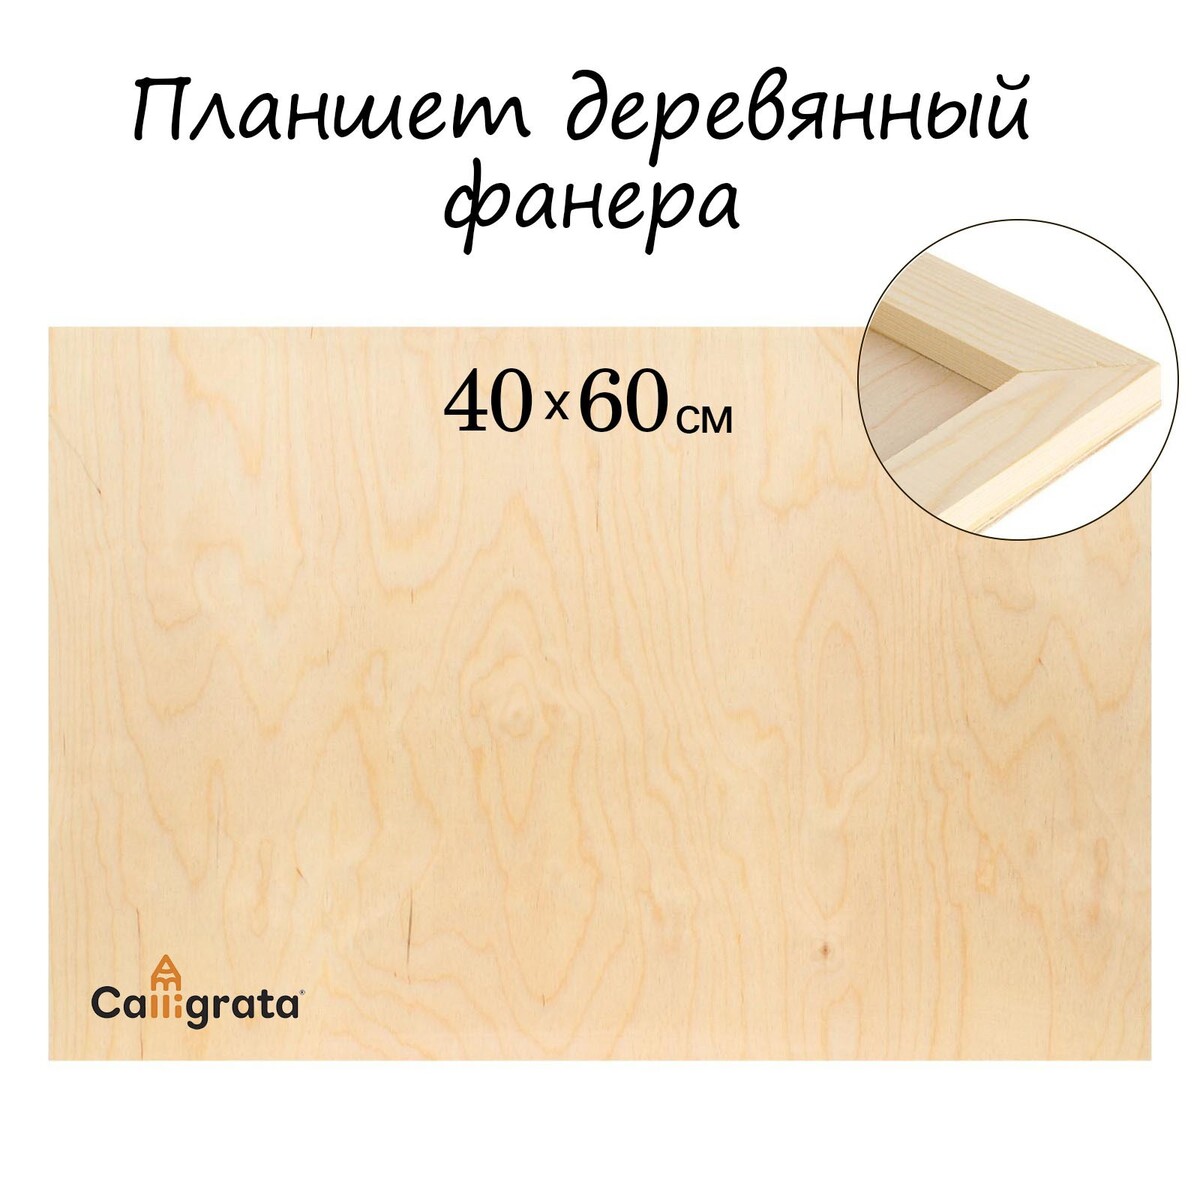 Планшет деревянный 40 х 60 х 2 см, фанера (для рисования эпоксидной смолой) планшет деревянный 40 х 50 х 2 см двп